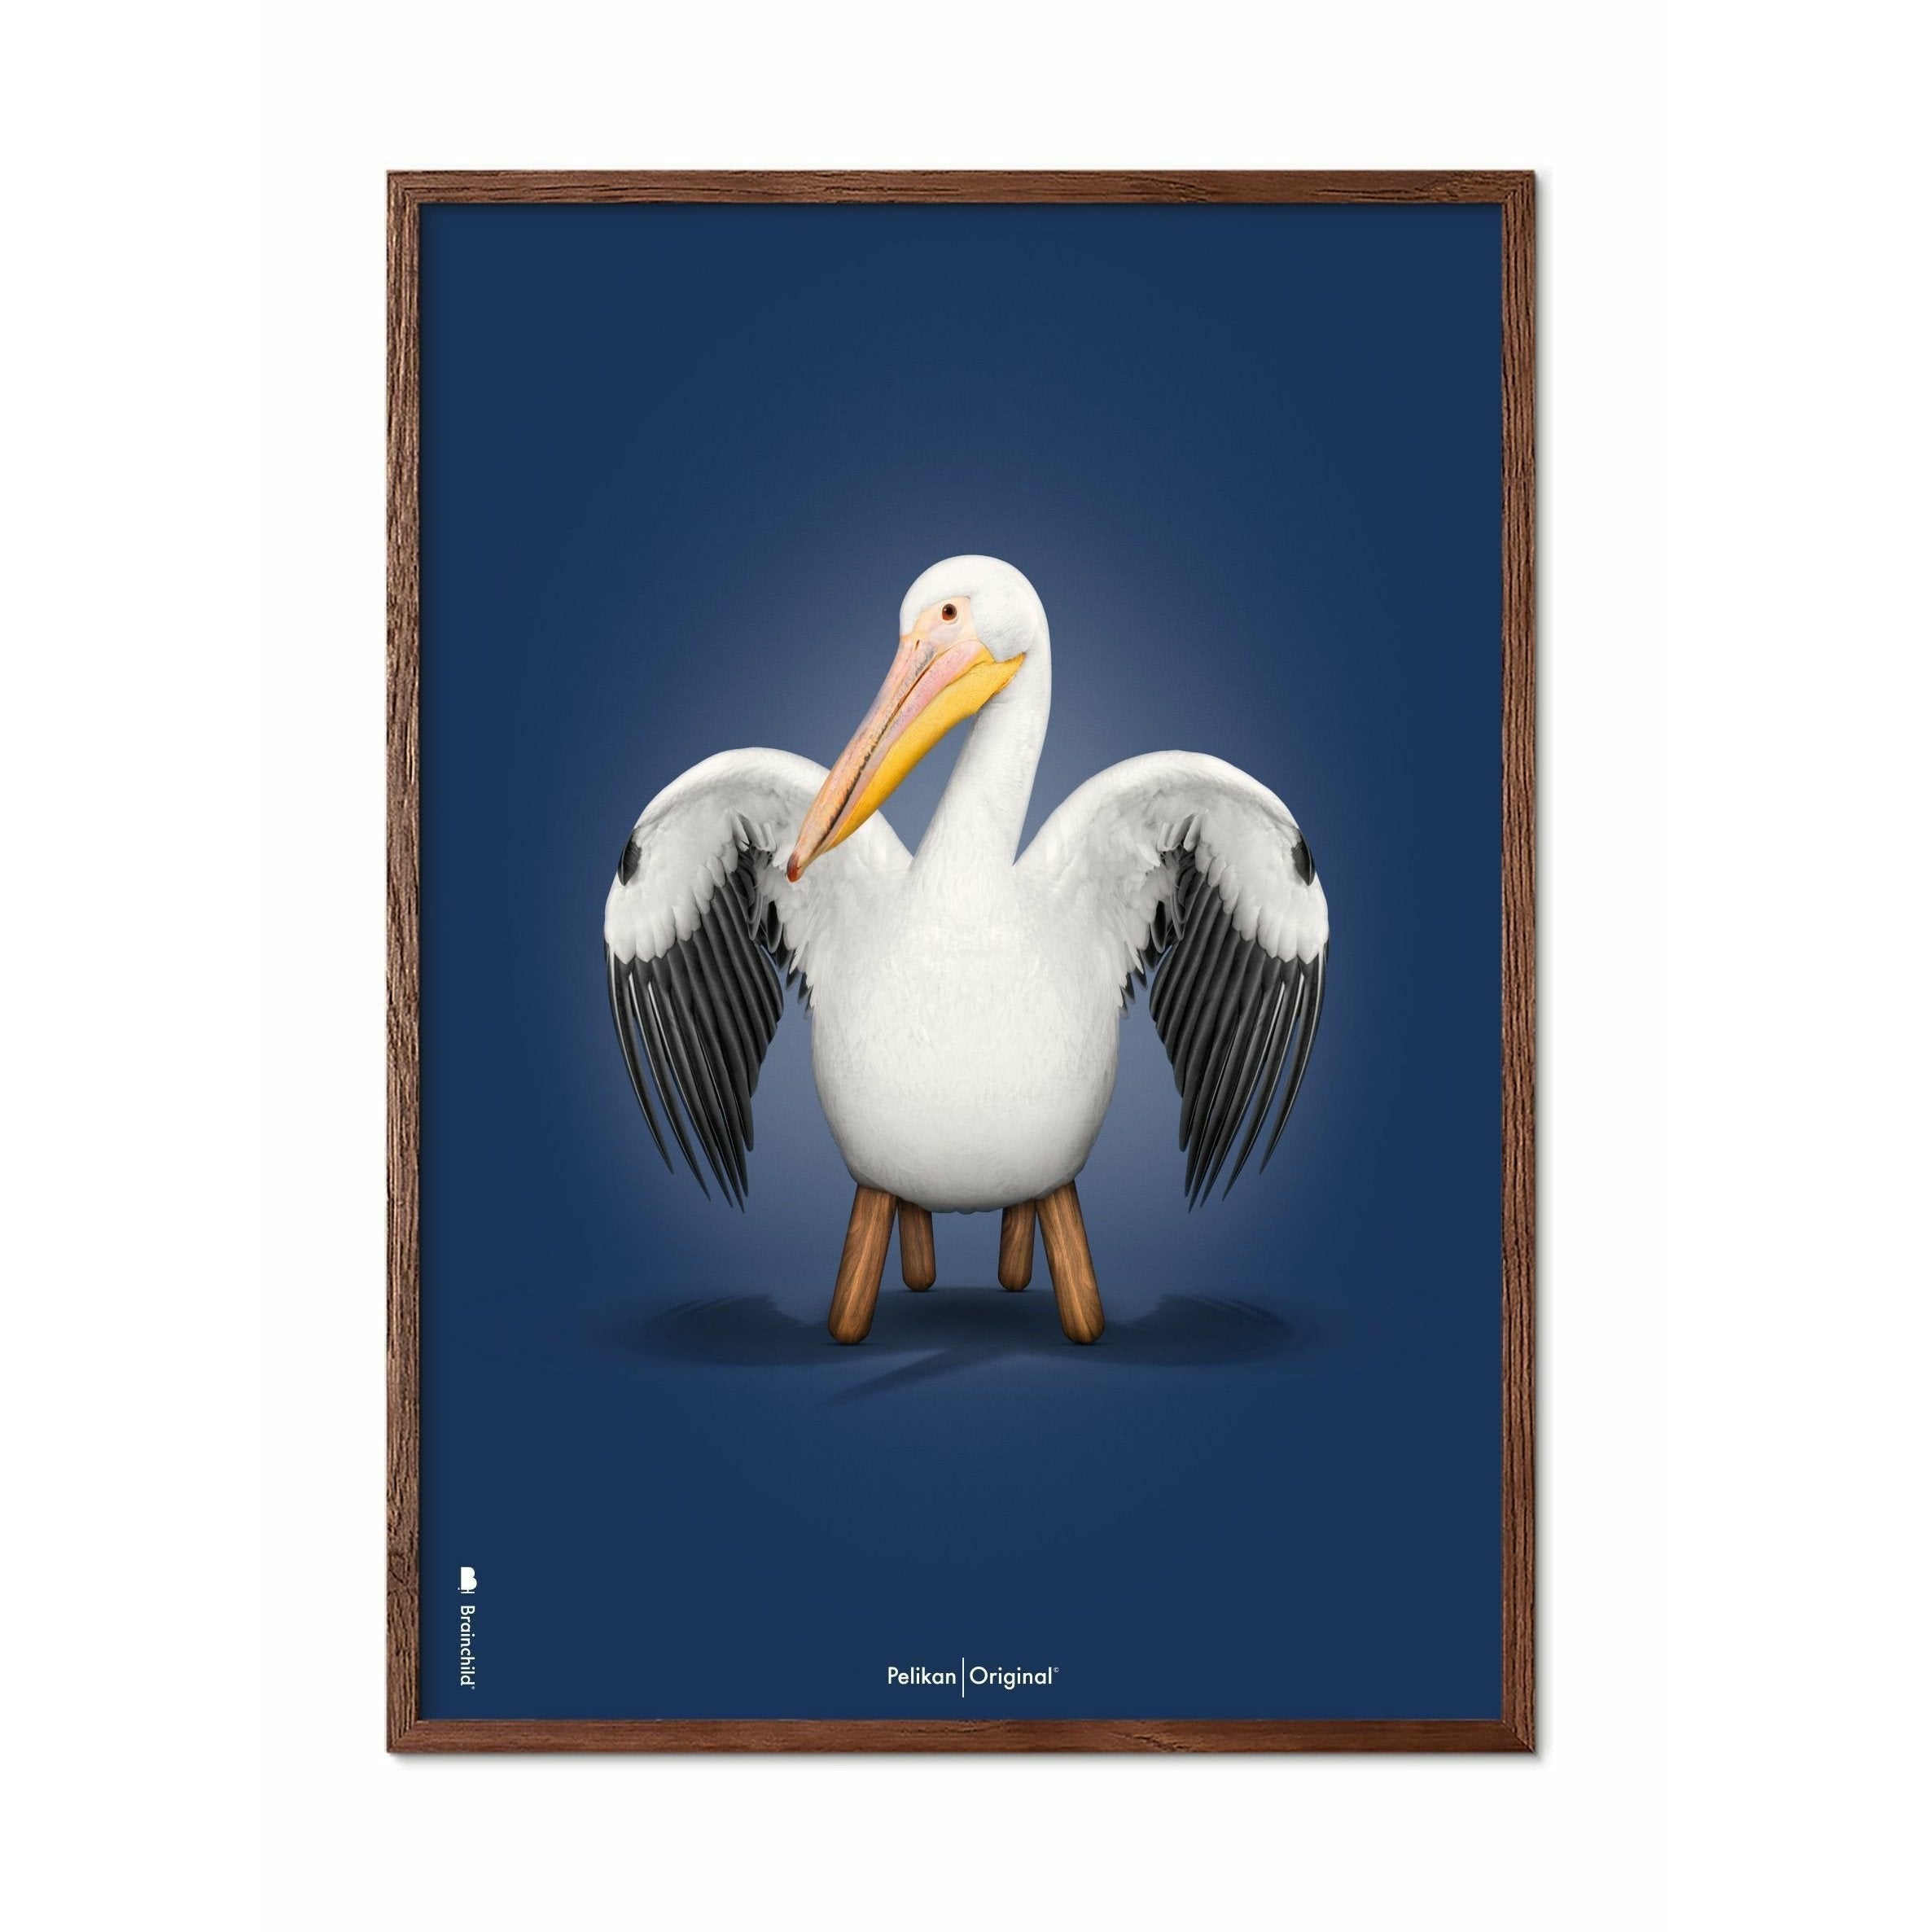 brainchild Poster classique Pelikan, cadre en bois foncé A5, fond bleu foncé